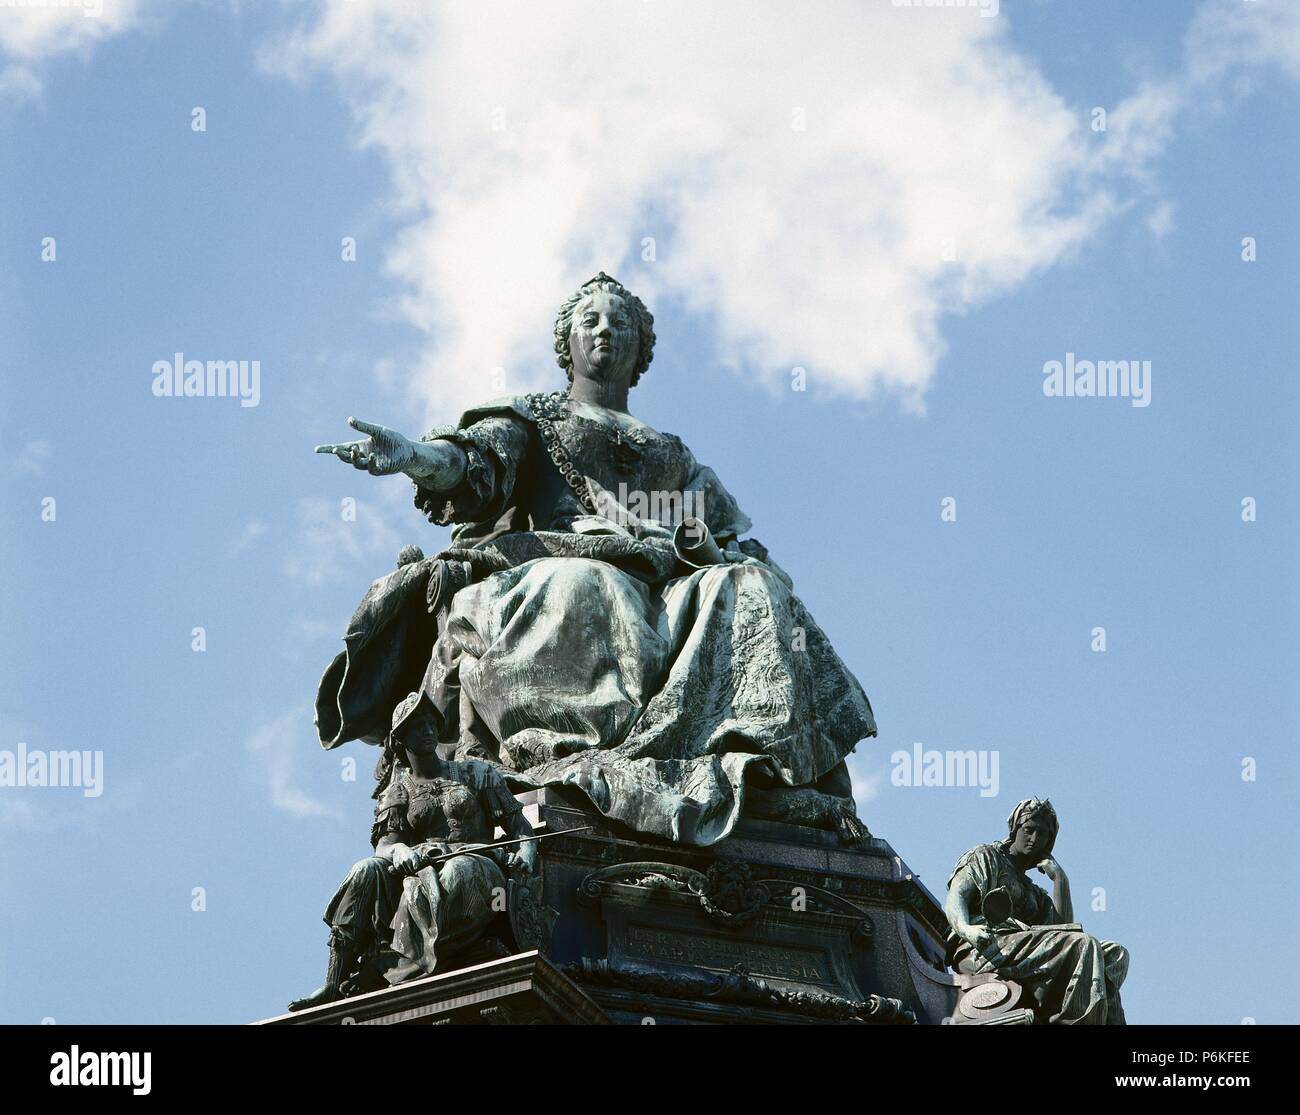 MARIA TERESA DE AUSTRIA (Viena,1717-Viena,1780). Archiduquesa de Austria, emperatriz de Alemania (1740-1780), reina de Hungría (desde 1741) y de Boemia (desde 1743), primogénita de Carlos VI. Estatua en Maria-Theresia-Platz, realizada en 1888 por Kaspar von ZUMB.S., representano a la emperatriz llevando en la mano la Pragmática Sanción de 1713. VIENA. Austria. Foto Stock